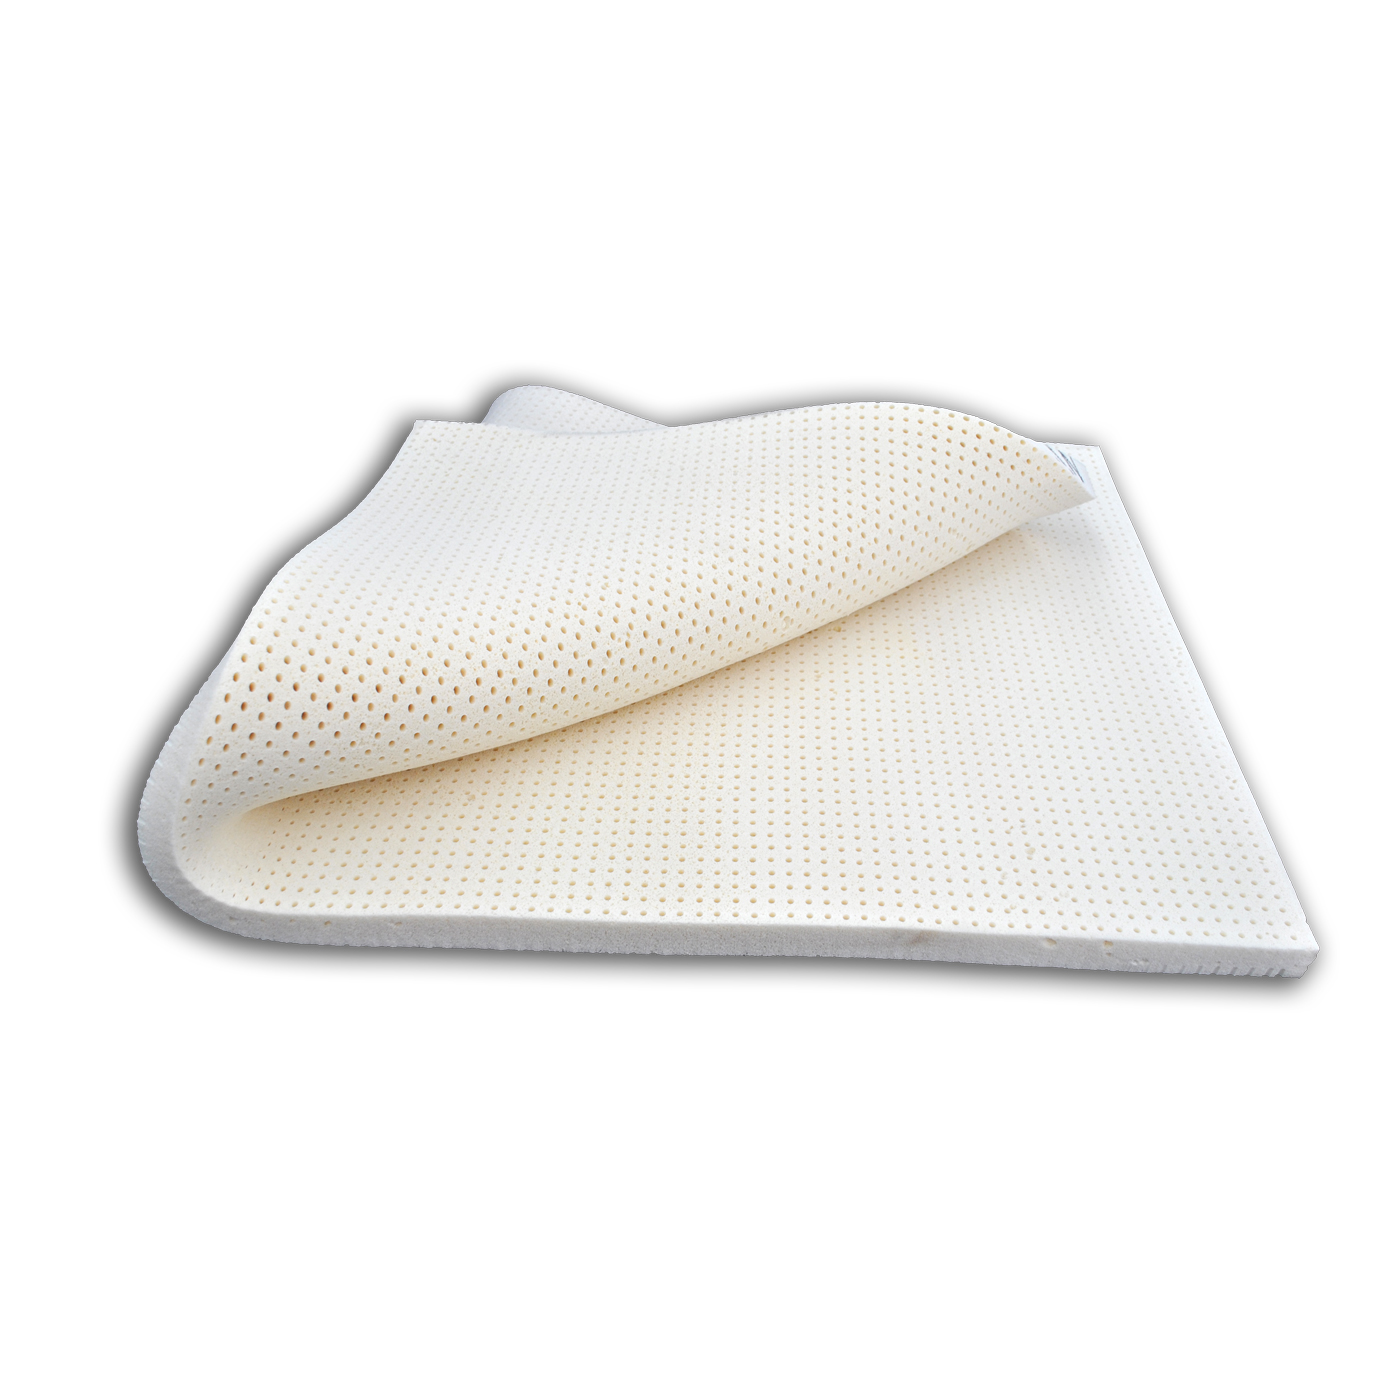 Soft Latex Mattress Pad Topper Foam